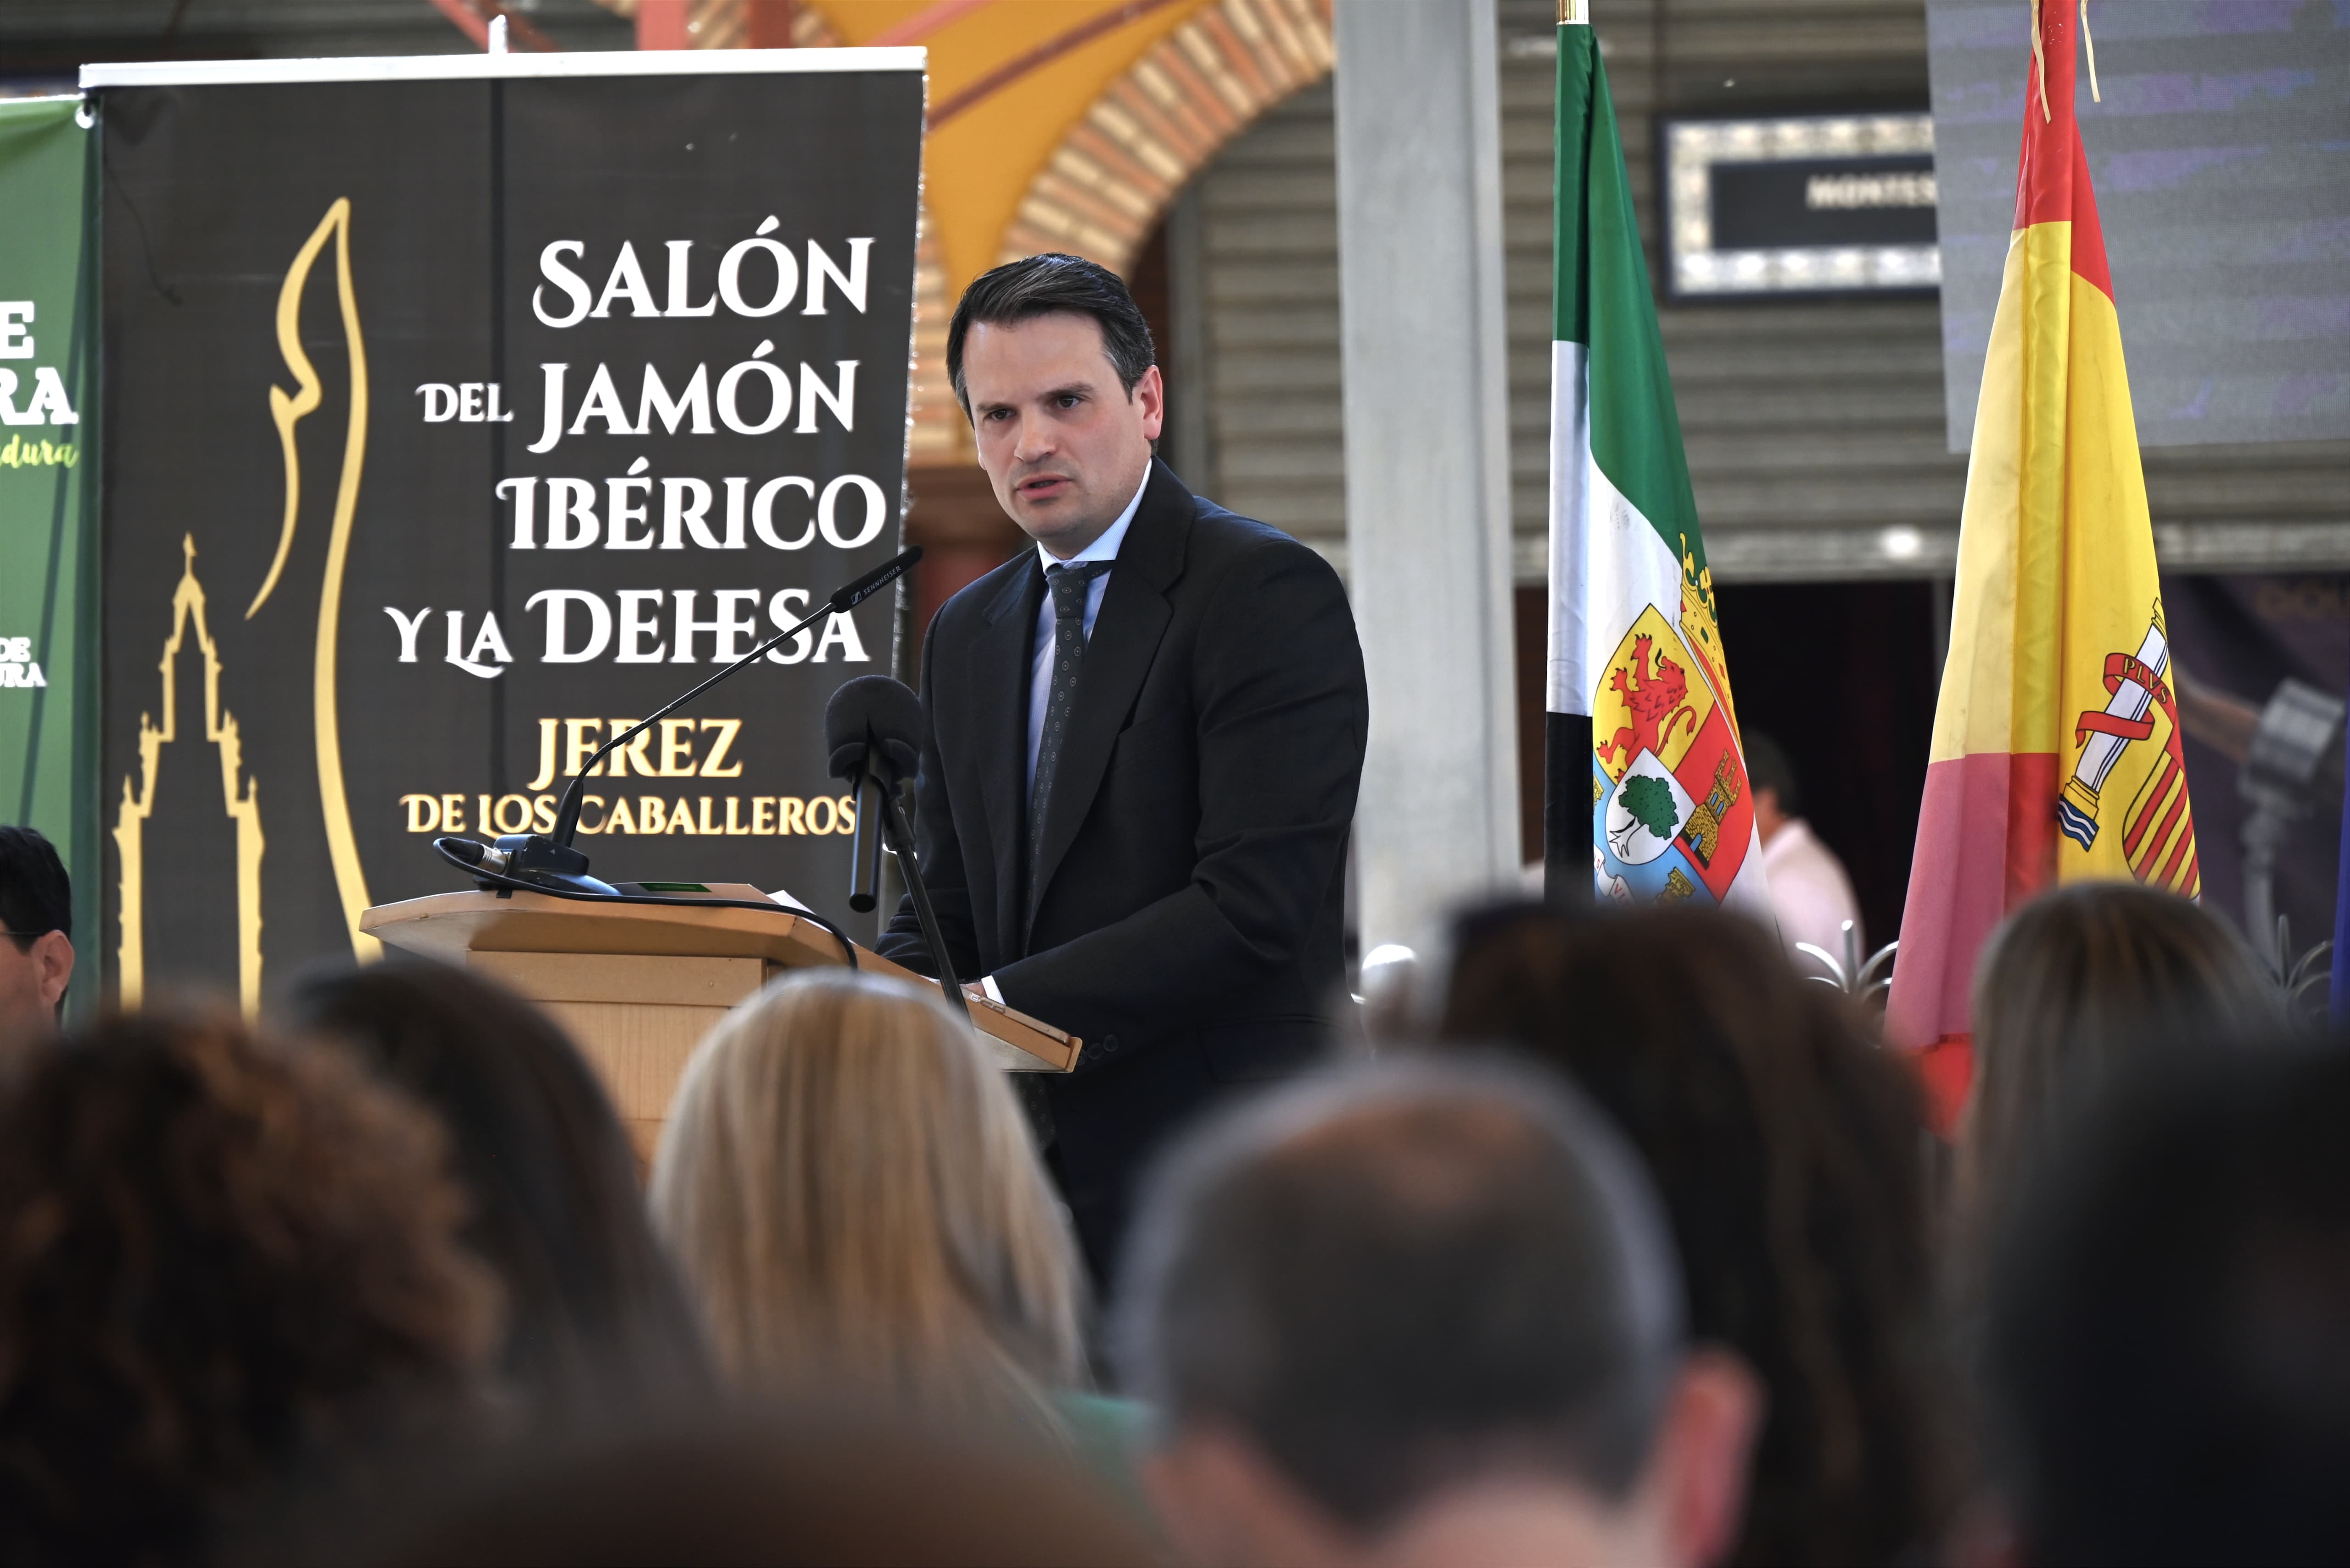 Image 3 of article Abel Bautista destaca la importancia económica del cerdo ibérico en Extremadura en la inauguración del Salón del Jamón